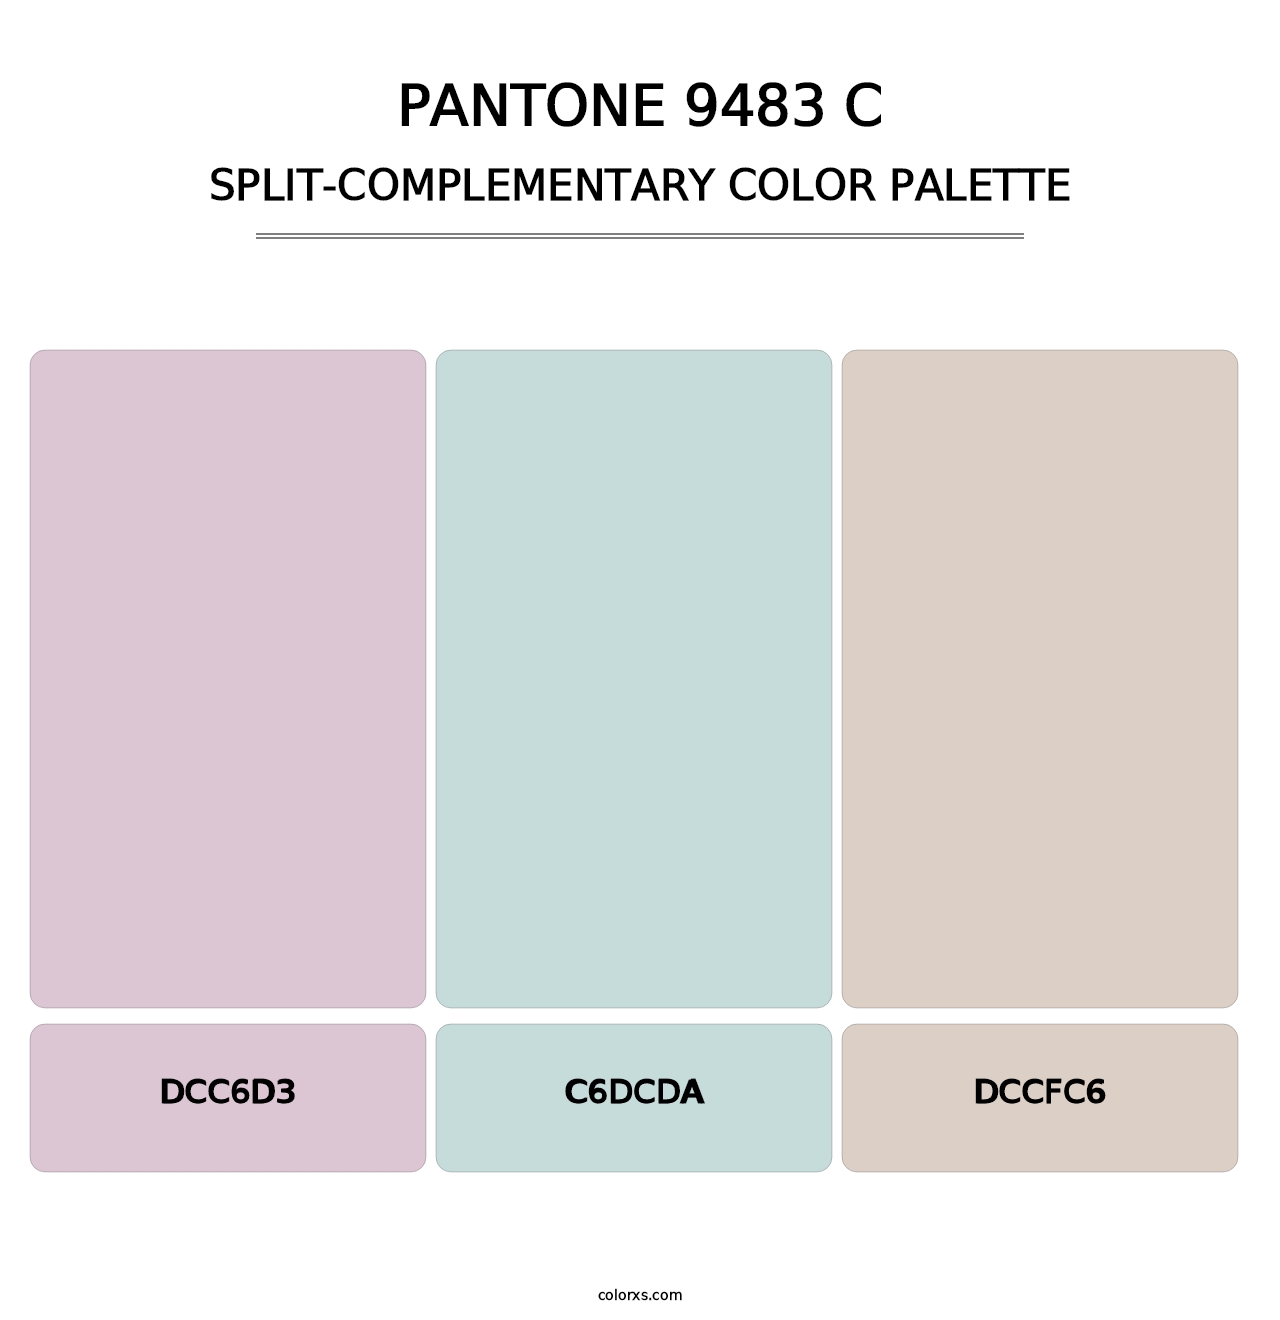 PANTONE 9483 C - Split-Complementary Color Palette